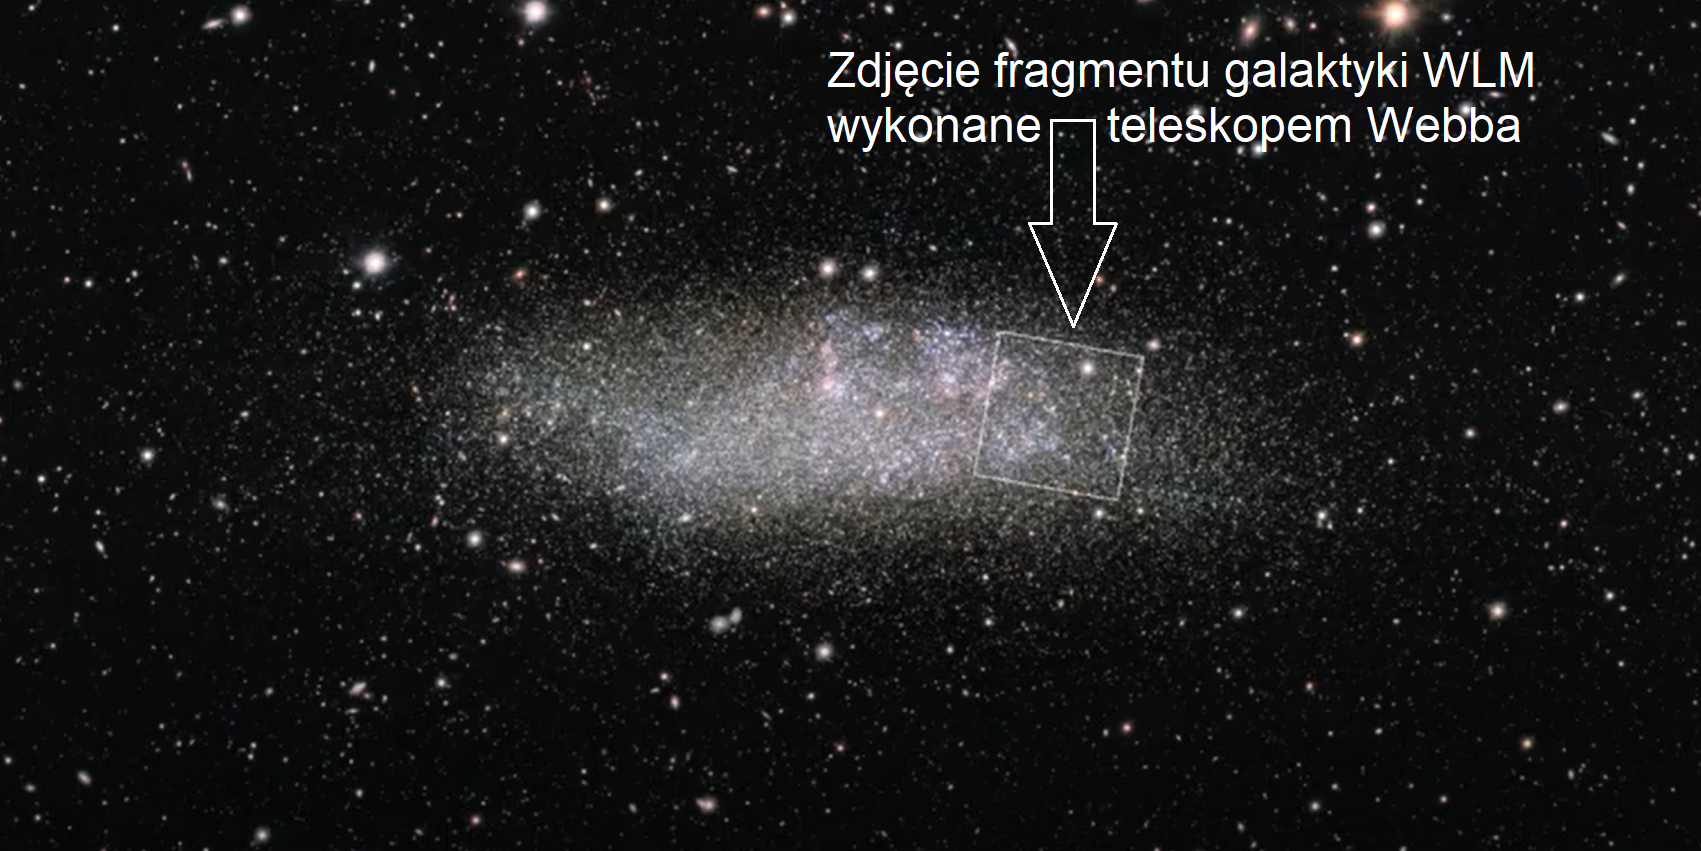 Zrzut ekranowy z animacja NASA prezentującej zbliżenie na galaktykę karłowatą Wolf-Lundmark-Melotte (WLM) - od zdjęcia z teleskopu VLT do zdjęcia wykonanego przez Kosmiczny Teleskop Jamesa Webba (kierunki na niebie: północ-po lewej, wschód-na dole). Widać tutaj zdjęcie z teleskopu VLT z zaznaczonych kwadratem o boku około 2’ (~1700 l.św. przy odległości do galaktyki WLM), który wskazuje na położenie kadru dla kamery NIRCam w teleskopie Webba. Źródło: NASA, ESA, CSA, ESO, Alyssa Pagan (STScI)